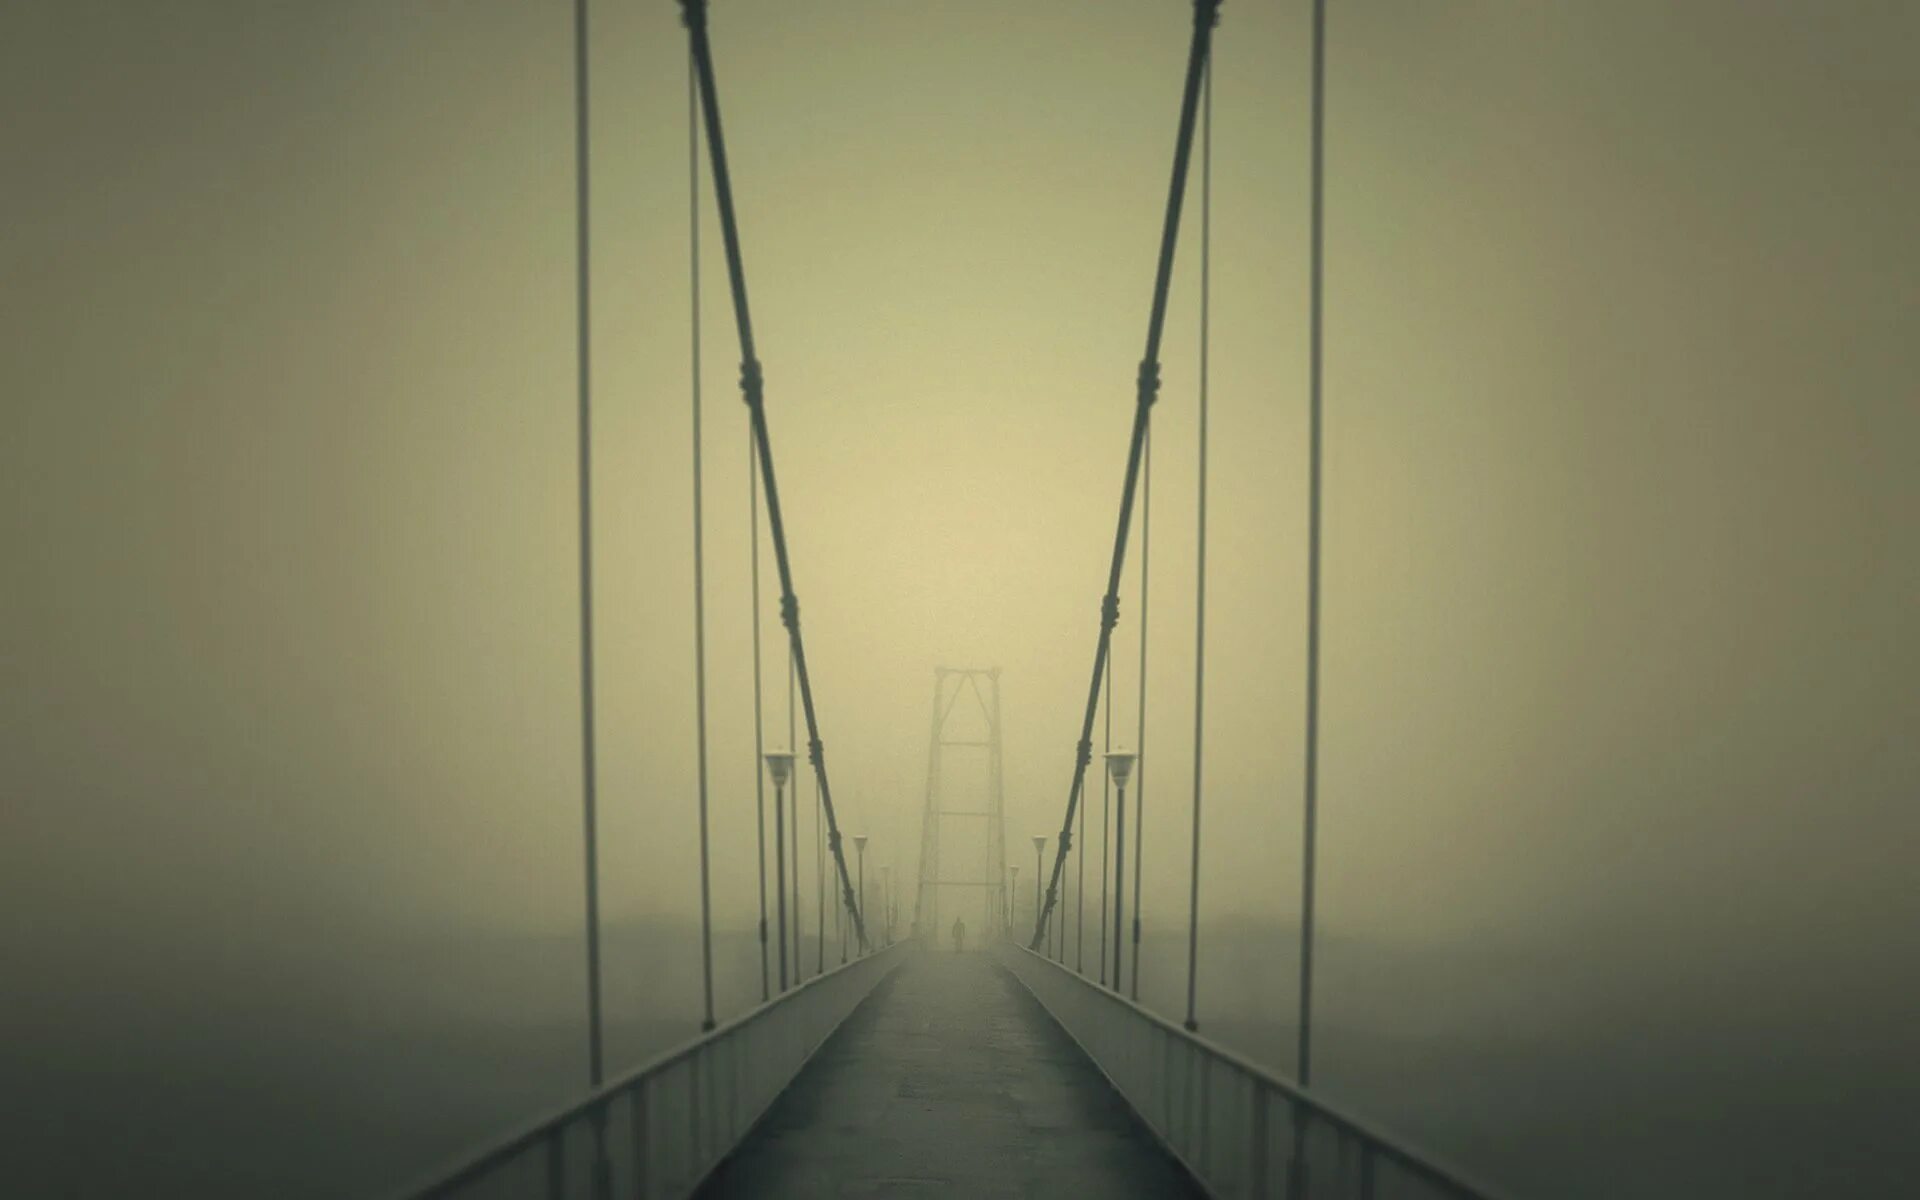 Мост в тумане. Подвесной мост в тумане. Мост уходящий в туман. Подвесной мост с перспективой. Вид никуда